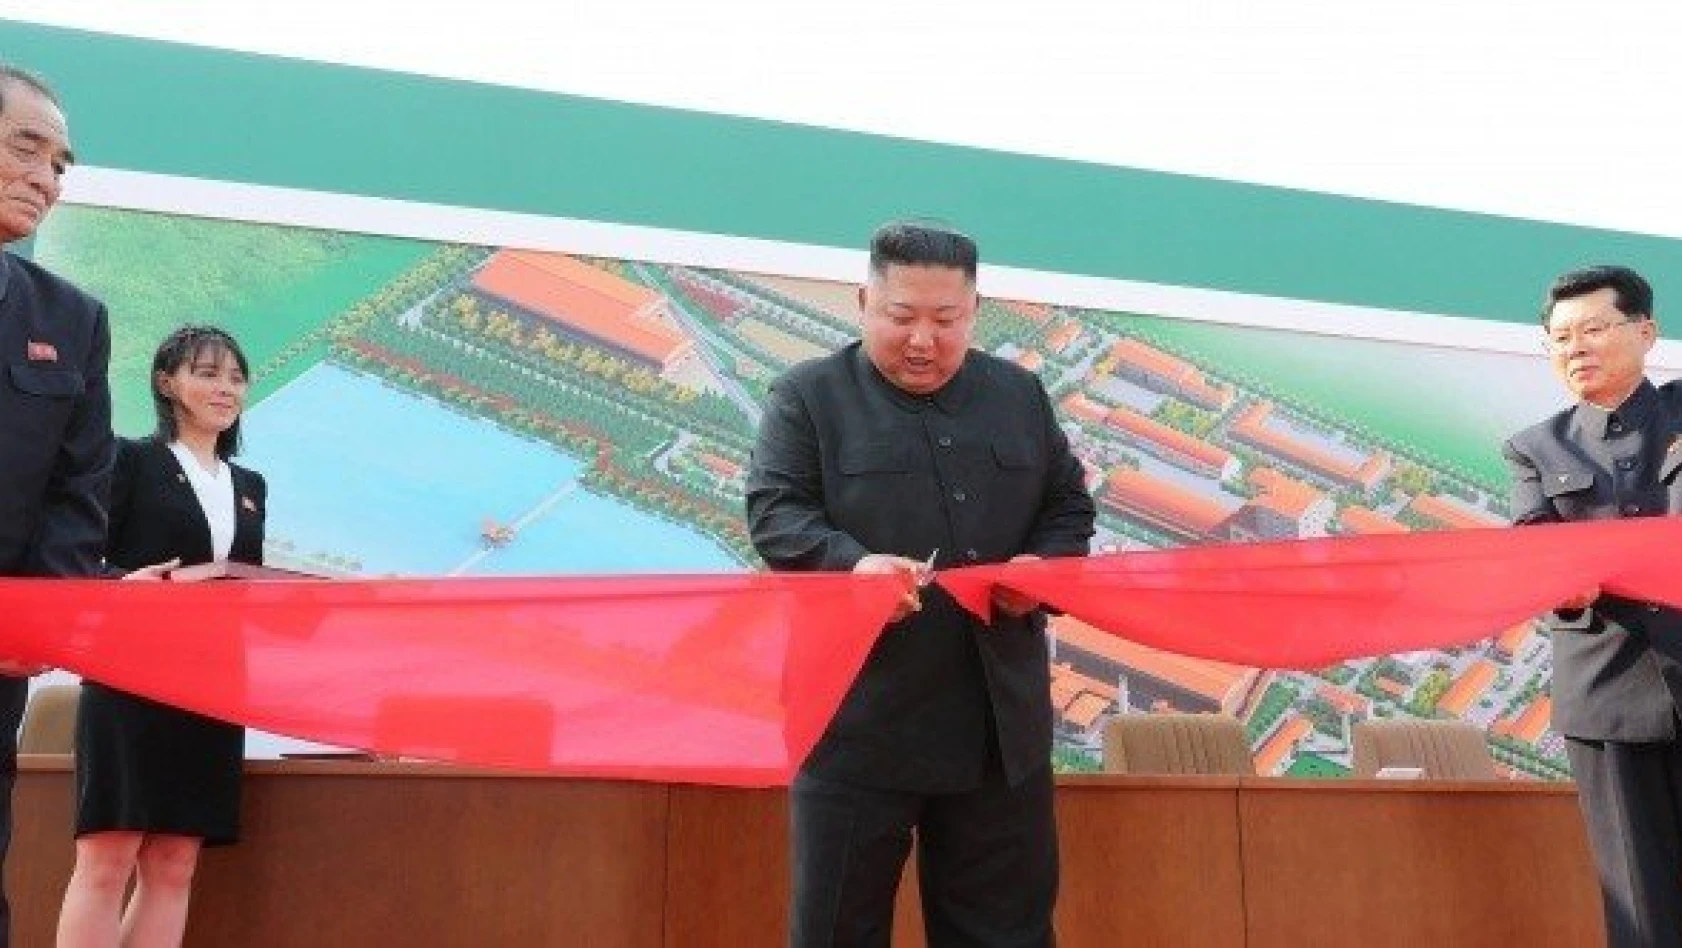 Öldü denilen Kuzey Kore lideri Kim ortaya çıktı